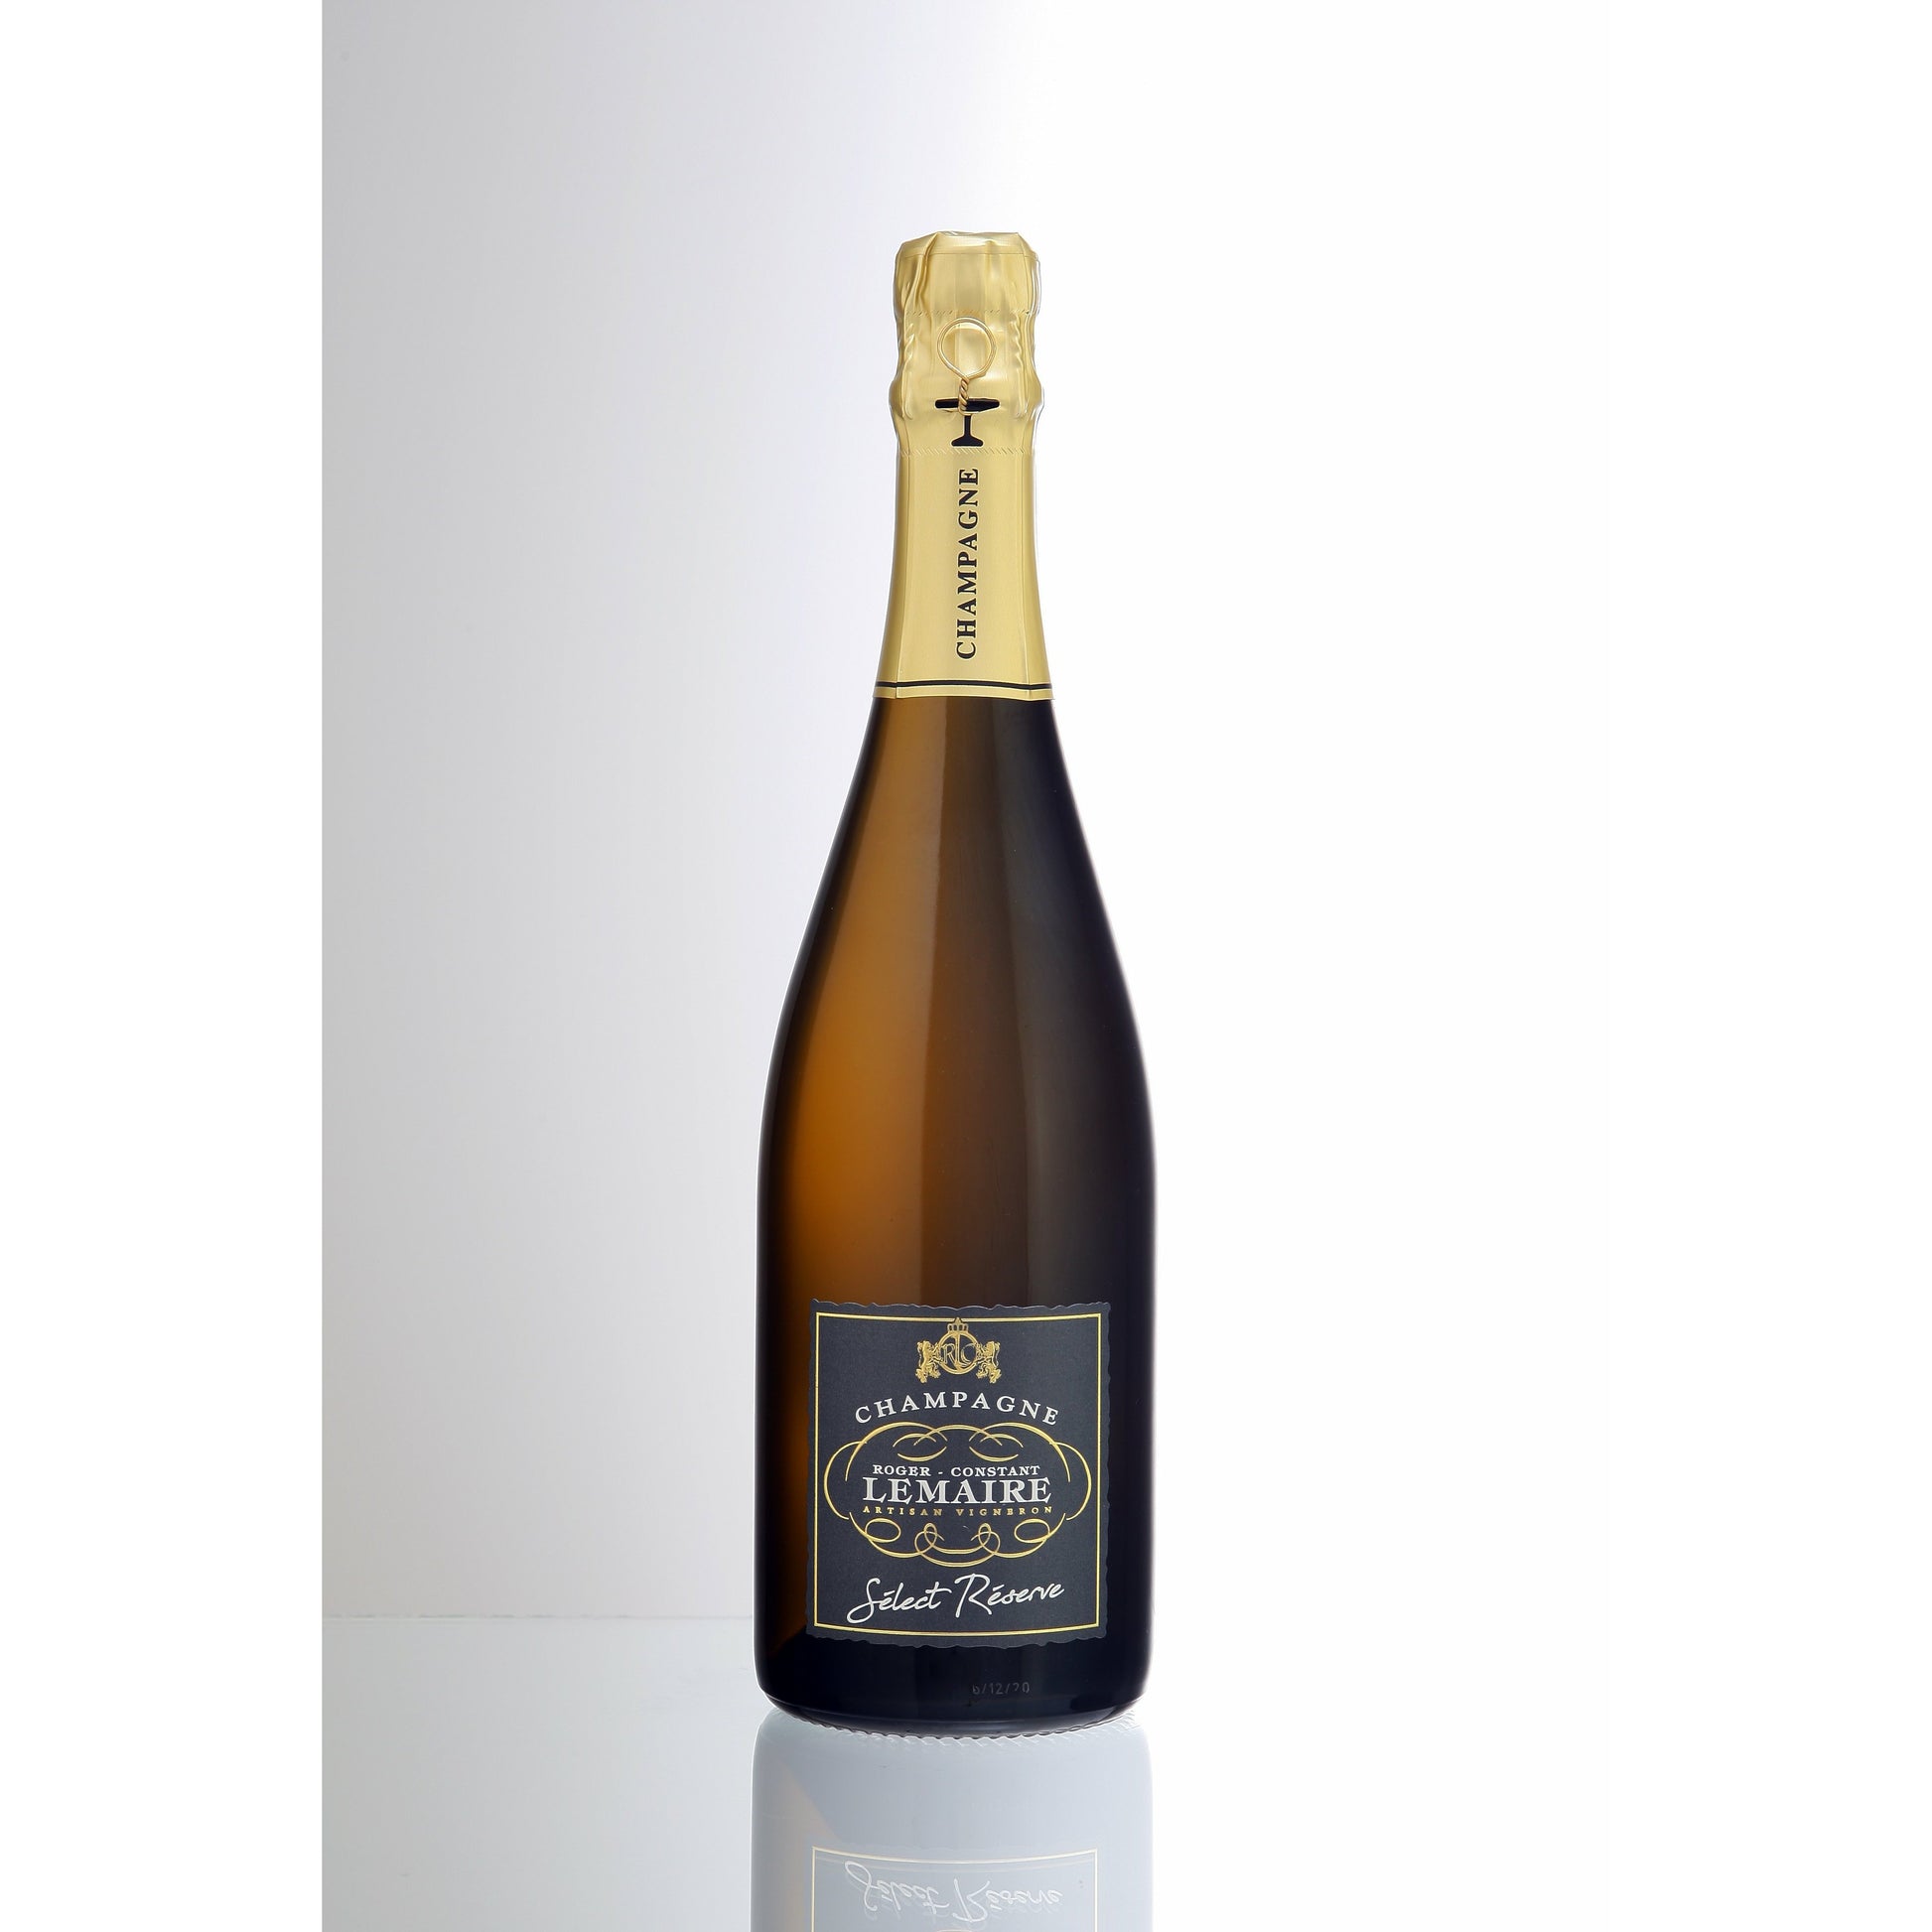 Champagne Roger Constant Lemaire - Select Réserve 0.375 Litre